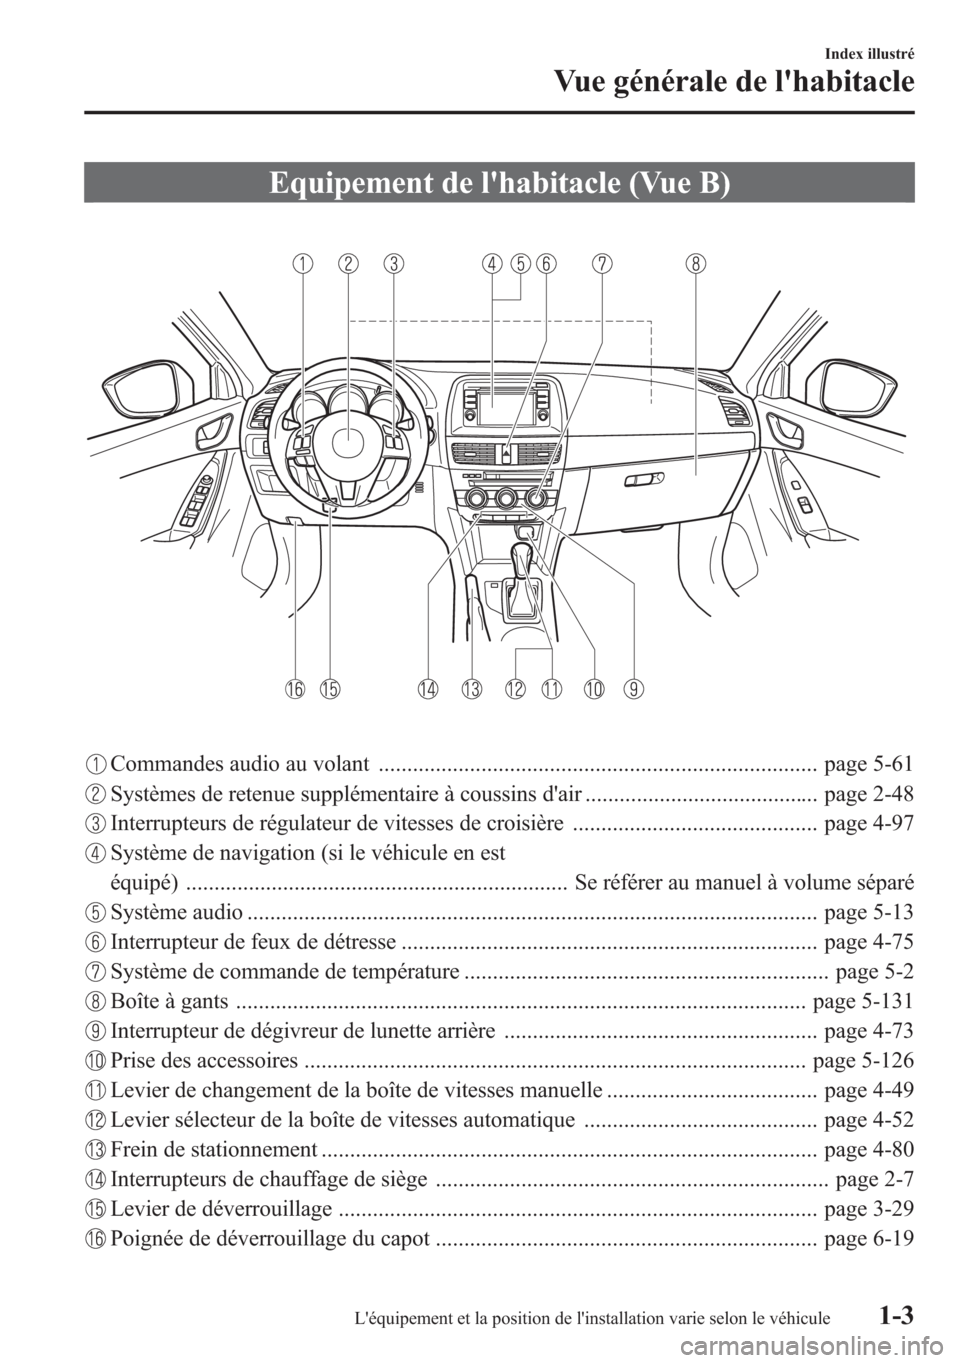 MAZDA MODEL CX-5 2014  Manuel du propriétaire (in French) Equipement de lhabitacle (Vue B)
Commandes audio au volant ............................................................................. page 5-61
Systèmes de retenue supplémentaire à coussins da